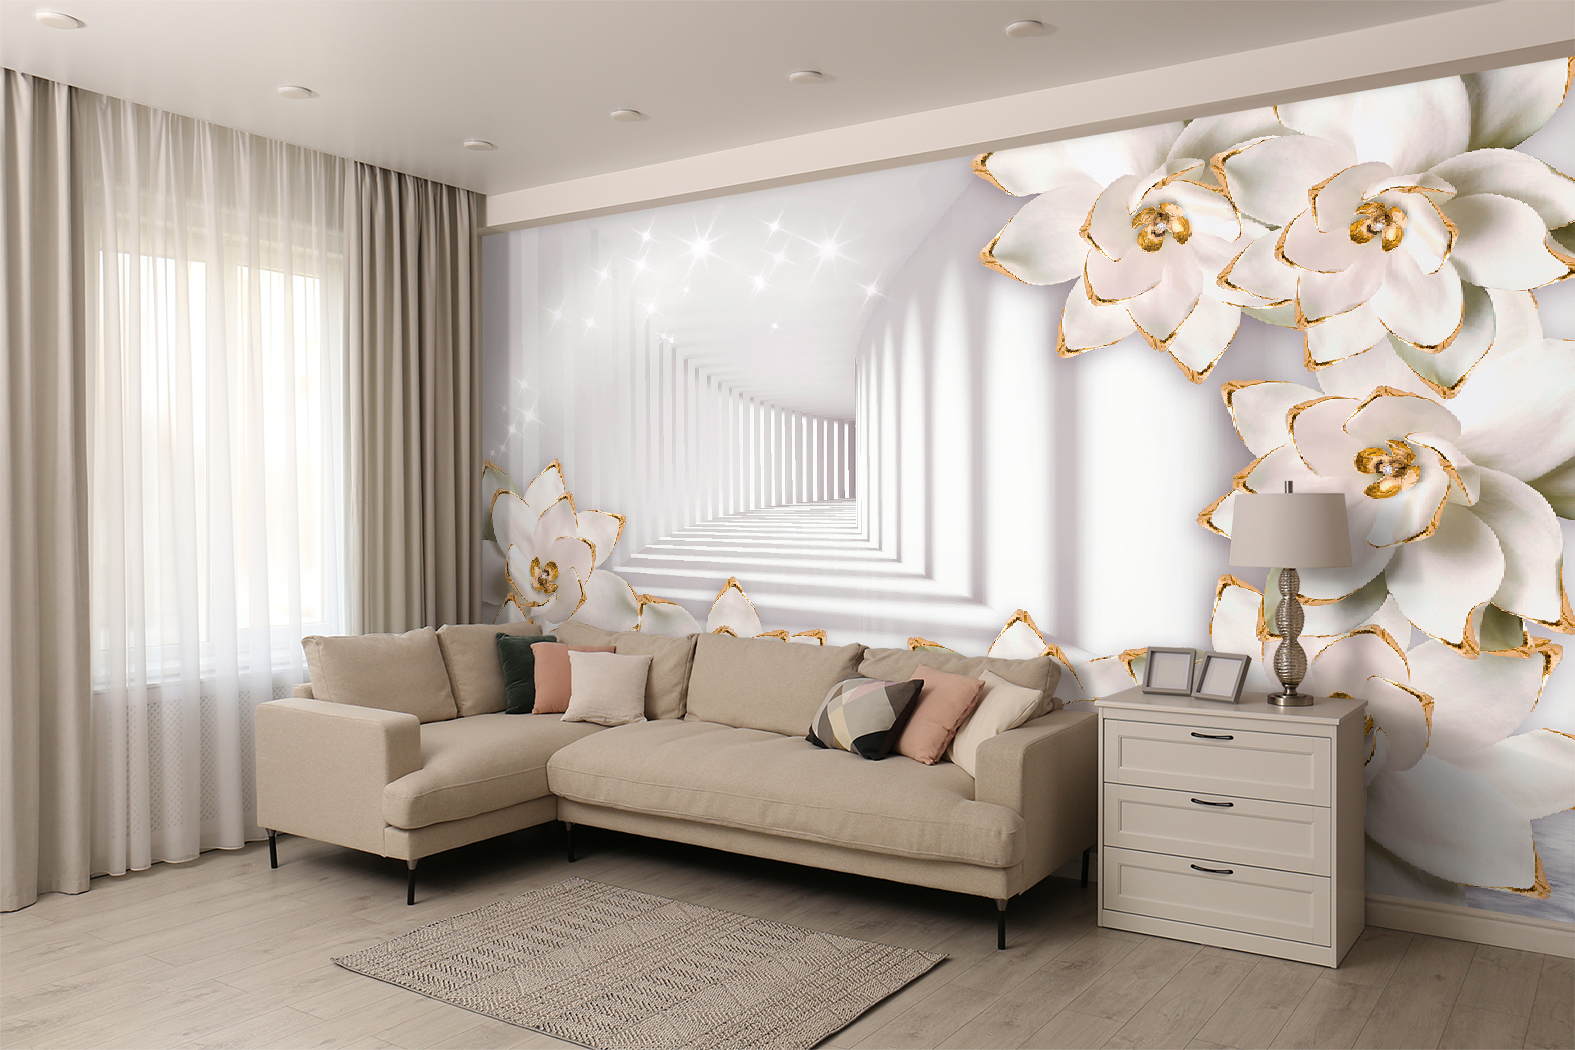 Фотообои Photostena 3D коридор и белые цветы 4,58 x 2,85 м самоклеящаяся пленка gekkofix14129 цветы белые 45см 2м